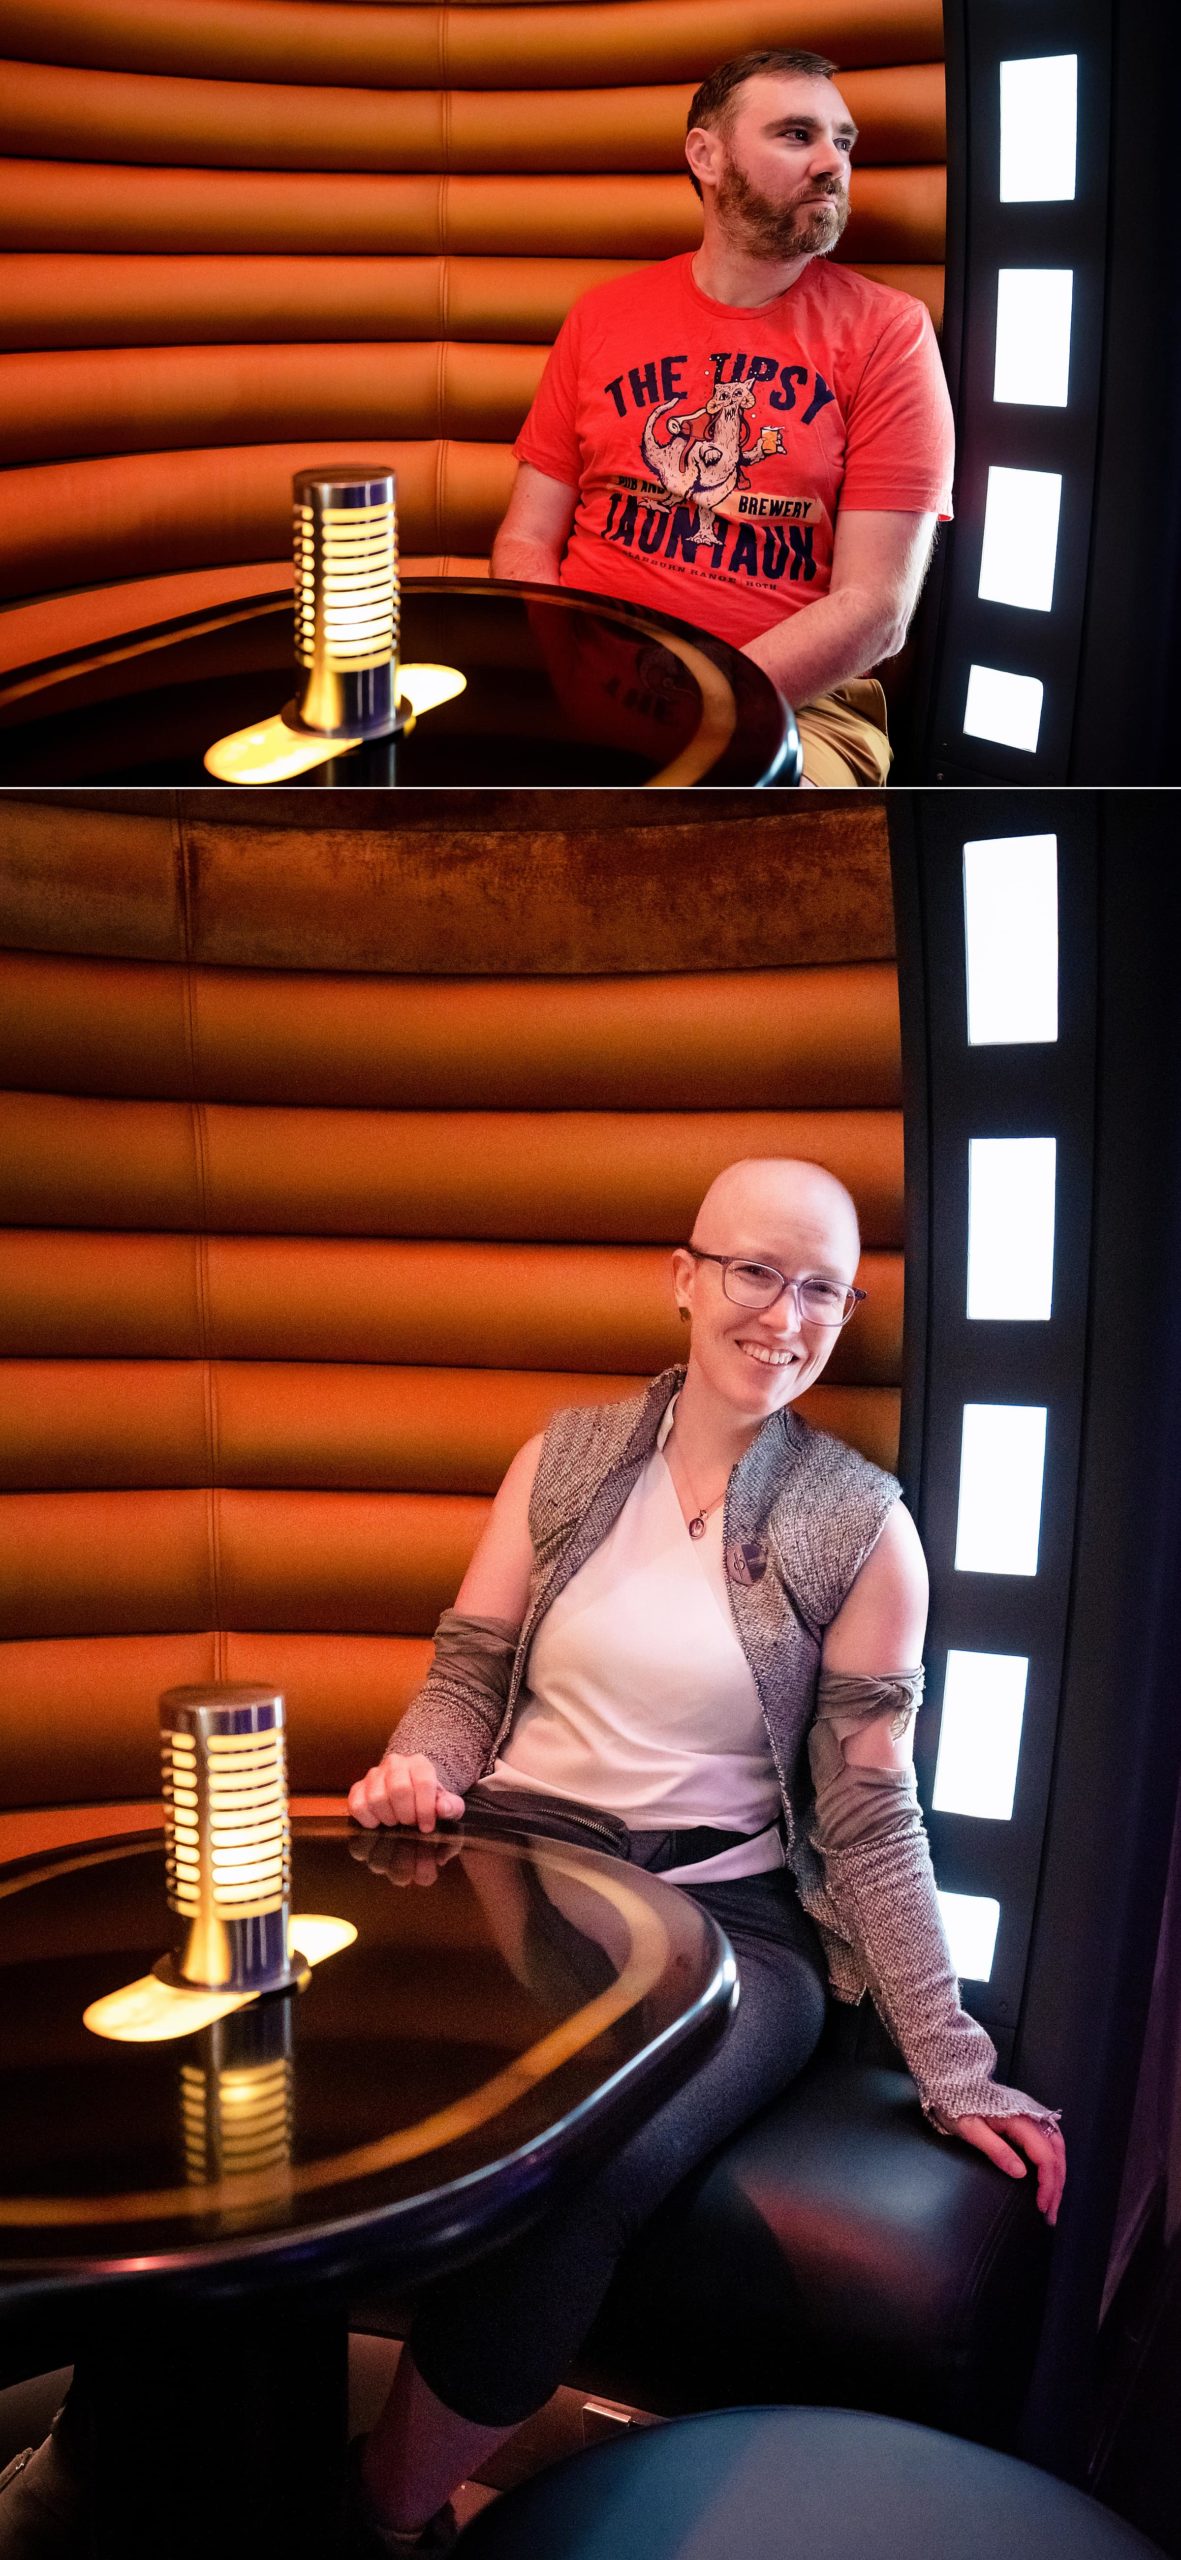 Posing as (bald) Rey at the Star Wars Hotel at Disney